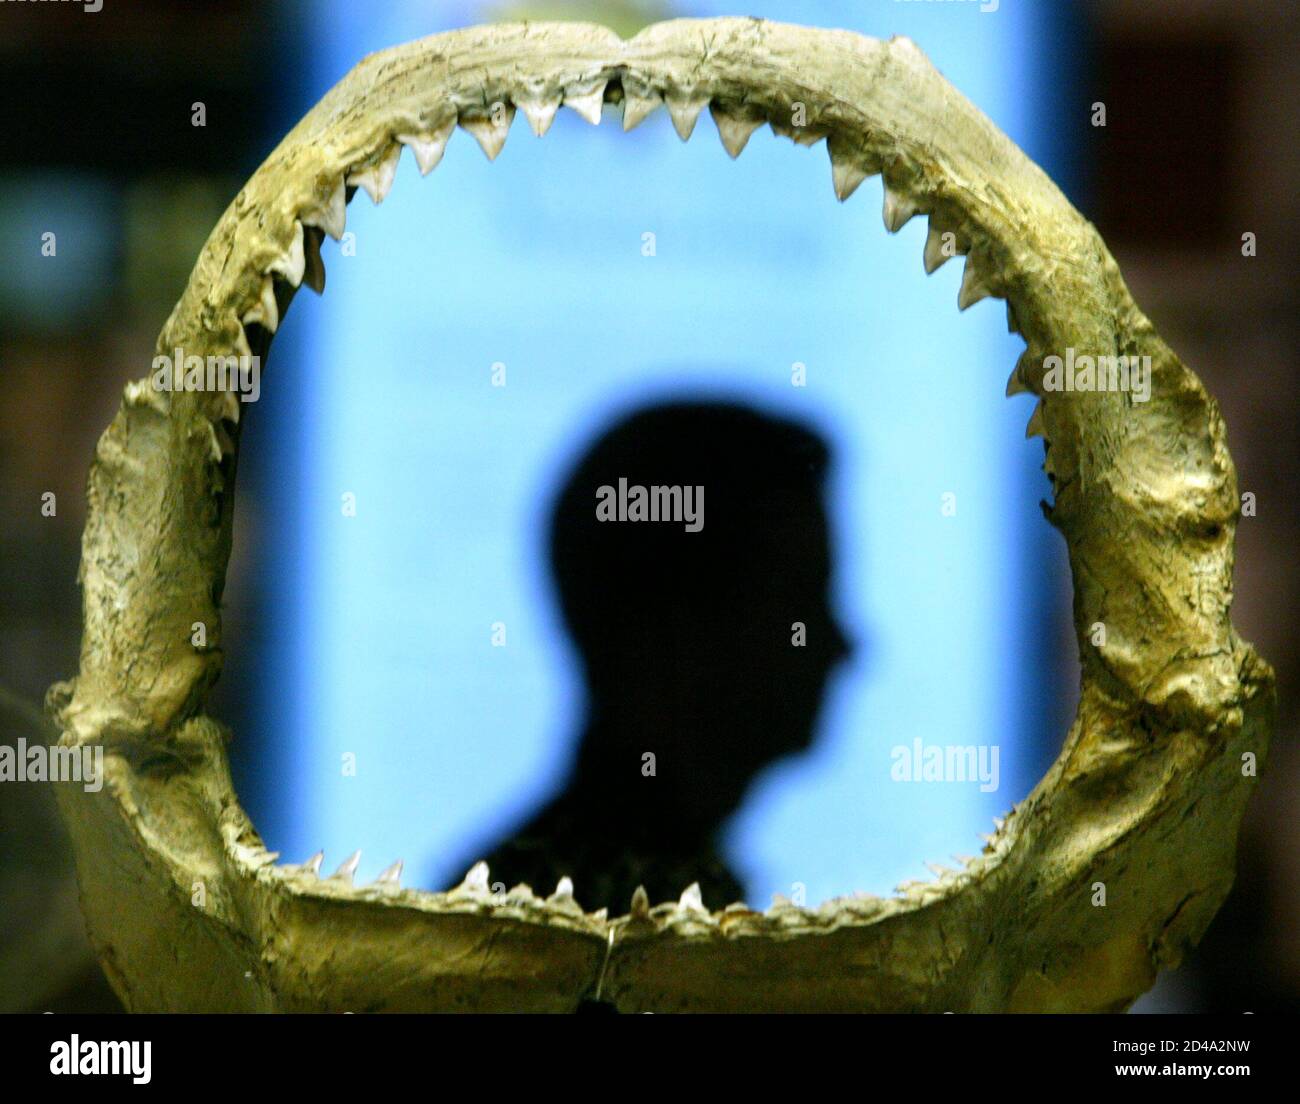 Ein Australian Museum Kurator ist in den erhaltenen Rachen ein Bullenhai auf dem Display an das Australian Museum in Sydney 12. März 2004 Silhouette. [Eines der aggressivsten Arten von Haien, Bull Haie befinden sich in Ozeanen und Flussmündungen auf der ganzen Welt aus dem Pazifik, dem Amazonas und sind vermutlich verantwortlich für viele Hai-Angriffe auf Menschen. Omniverous Bullenhaie oft lauern in trüben Gewässern in der Nähe von beliebten Badestellen und Schwimmer, die sie kämpfen oder verletzte Fische verwechseln angreifen können.] Stockfoto